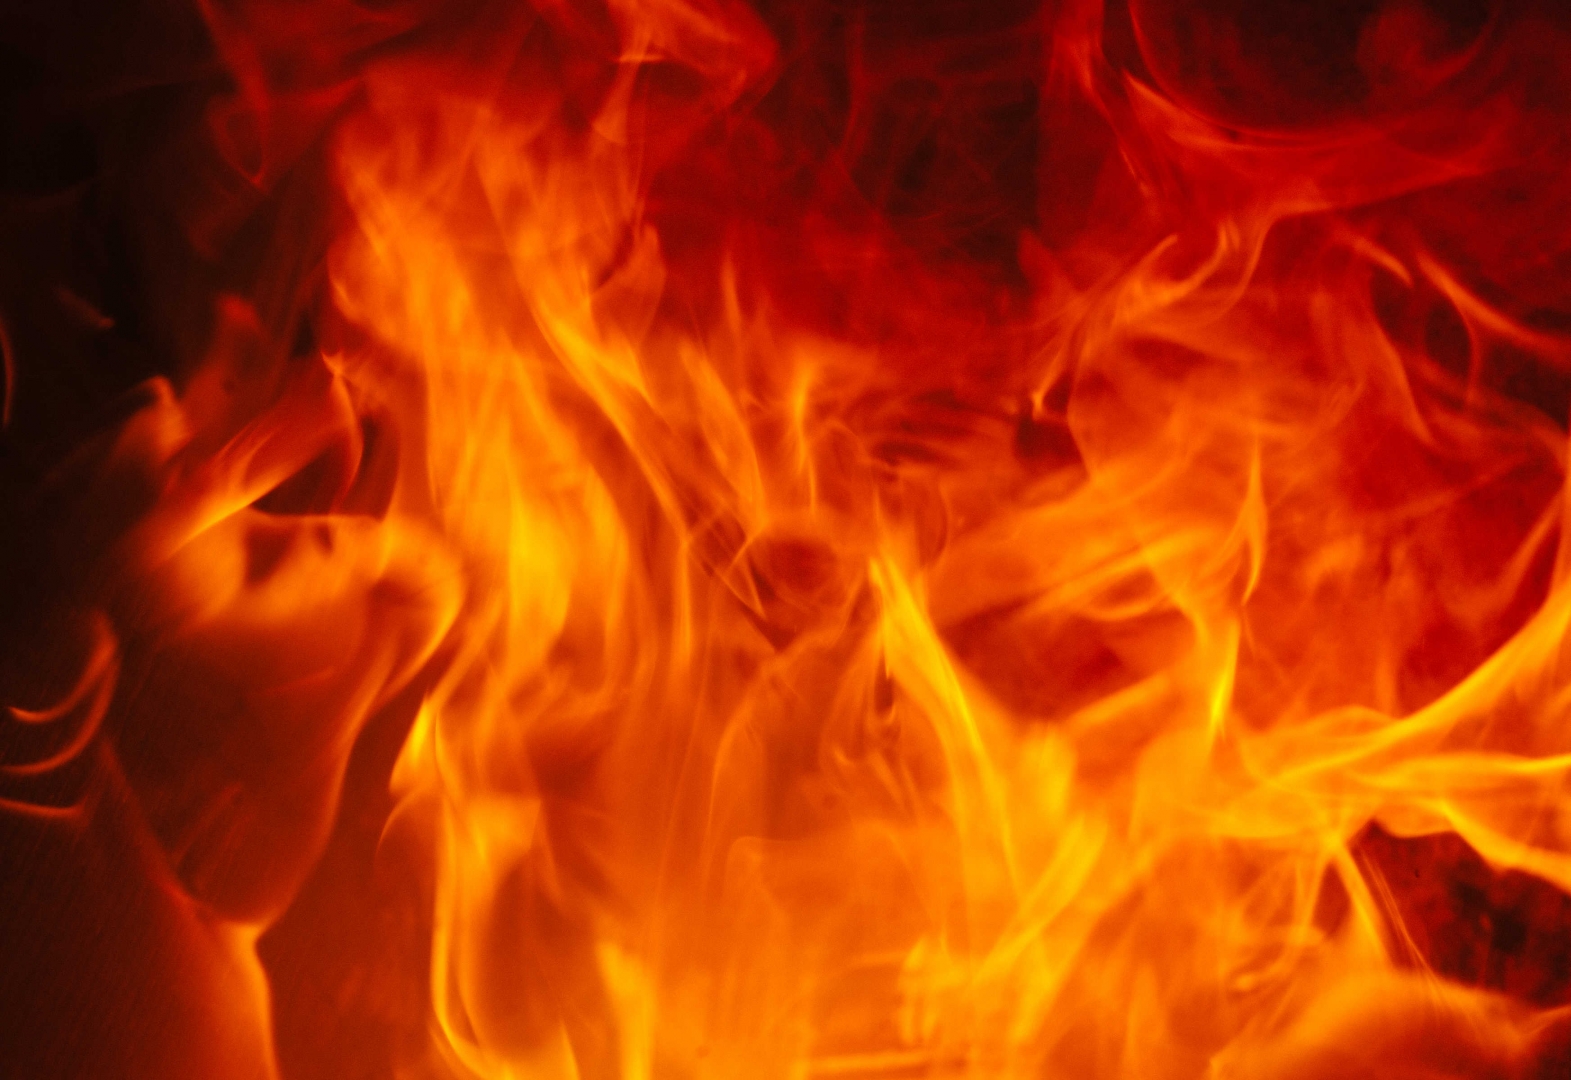 Трое детей пострадали при пожаре в Олекминске